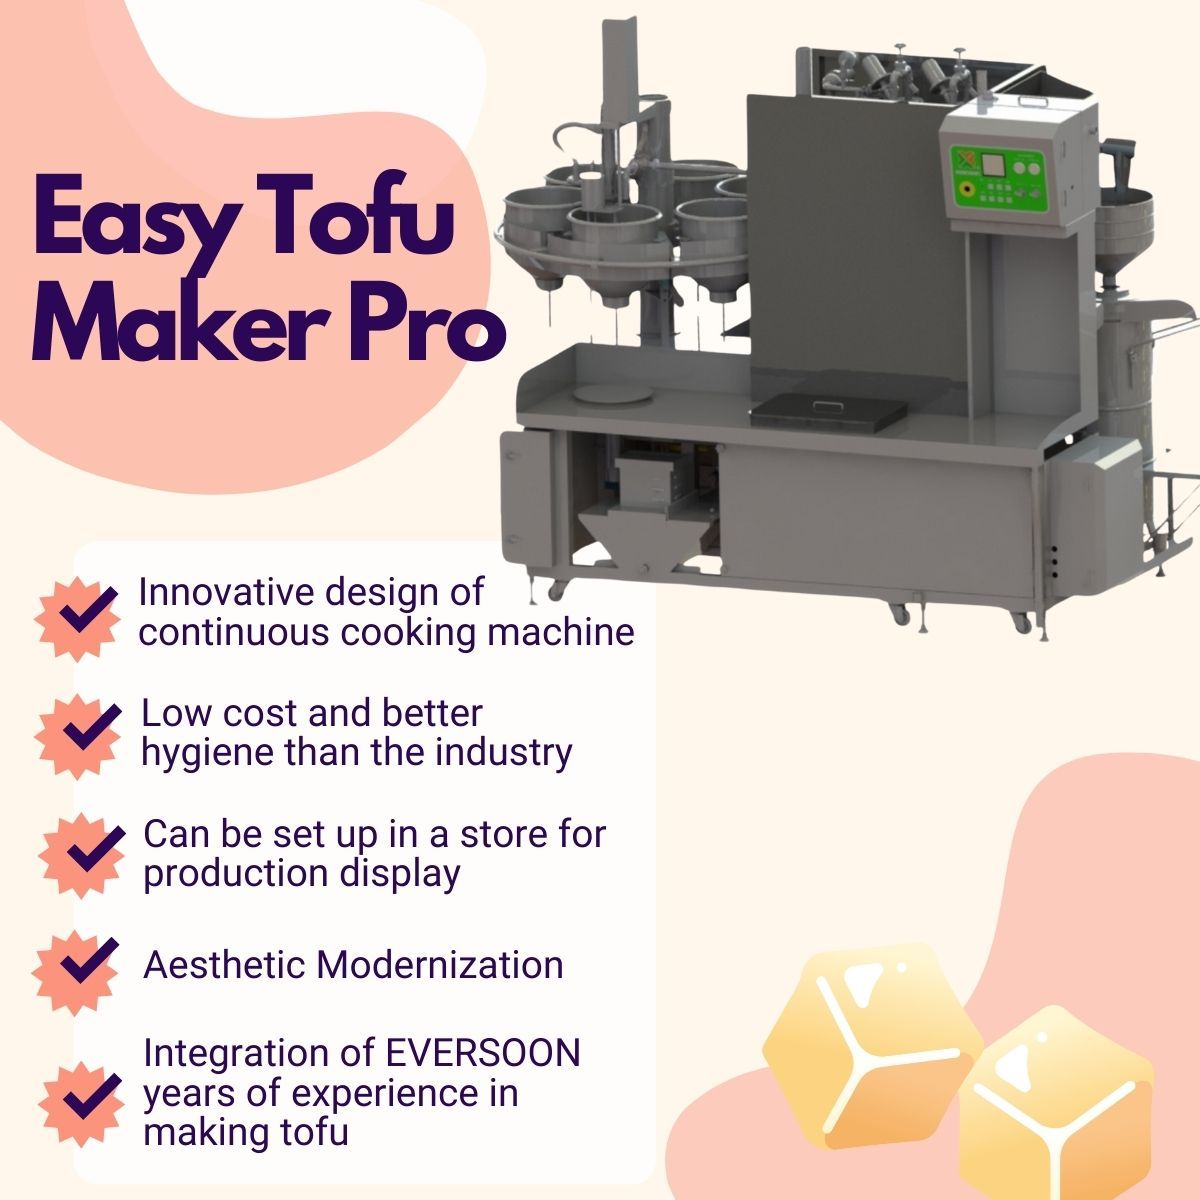 Automatický výrobník tofu, Easy Tofu Maker, Smažený tofu stroj, Průmyslová výroba tofu, malý výrobník tofu, Výrobní zařízení na sójové potraviny, stroj na sójové maso, stroj na výrobu sójového mléka a tofu, tofu zařízení, tofu stroj, prodej stroje na tofu, výrobce stroje na tofu, výrobce stroje na tofu, cena stroje na tofu, Tofu stroj, Tofu stroje a vybavení, Tofu výrobce, stroj na výrobu tofu, výroba tofu, zařízení na výrobu tofu, stroj na výrobu tofu, cena stroje na výrobu tofu, výrobci tofu, výroba tofu, zařízení na výrobu tofu, továrna na výrobu tofu, vybavení na výrobu tofu, výrobní linka na tofu, cena výrobní linky na tofu, výrobník tofu, automatický tofu stroj, Výrobník veganského masa, Výrobní linka veganského masa, Zařízení na výrobu zeleninového tofu, Komerční tofu stroj, Automatický stroj na sójové mléko, Automatický přístroj na výrobu sójového mléka, Jednoduchý výrobník tofu, Výroba sójového mléka, Stroj na výrobu sójového nápoje, komerční stroj na výrobu sójového mléka a tofu, stroj na výrobu sójového mléka a tofu, přístroj na vaření sójového mléka, stroj na sójové mléko, stroj na sójové mléko vyrobený na Tchaj-wanu, stroje na sójové mléko, stroje a vybavení na sójové mléko, výrobce sójového mléka, Výroba sójového mléka, zařízení na výrobu sójového mléka, výrobní linka na sójové mléko, cena stroje na výrobu sójového mléka, stroj na zpracování sójových bobů, stroj na výrobu sójového mléka, stroj na výrobu sójového mléka a tofu, komerční výrobce sójového mléka, komerční stroj na sójové mléko, komerční stroj na sójové mléko, komerční stroj na sójové mléko, Sójový mléčný kotel pro podnikatelské účely, Sójový mléčný mlýnek pro podnikatelské účely, Sójový mléčný stroj pro podnikatelské účely, stroje na sójové mléko pro podnikatelské účely, vybavení pro výrobu sójového mléka ve obchodě